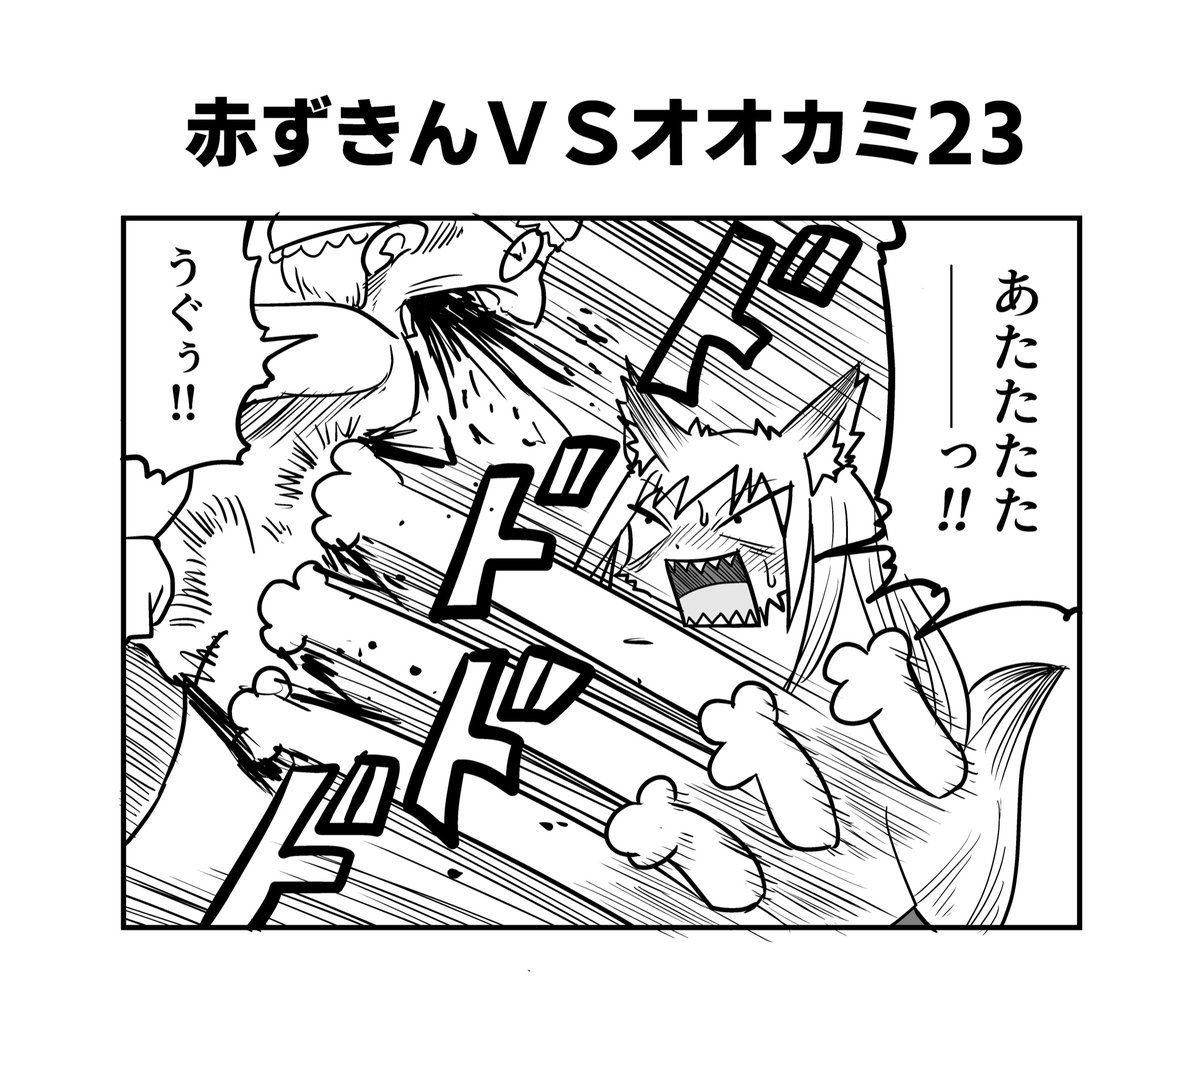 赤ずきんちゃんとクソ雑魚オオカミちゃん22〜25
#へんな漫画 